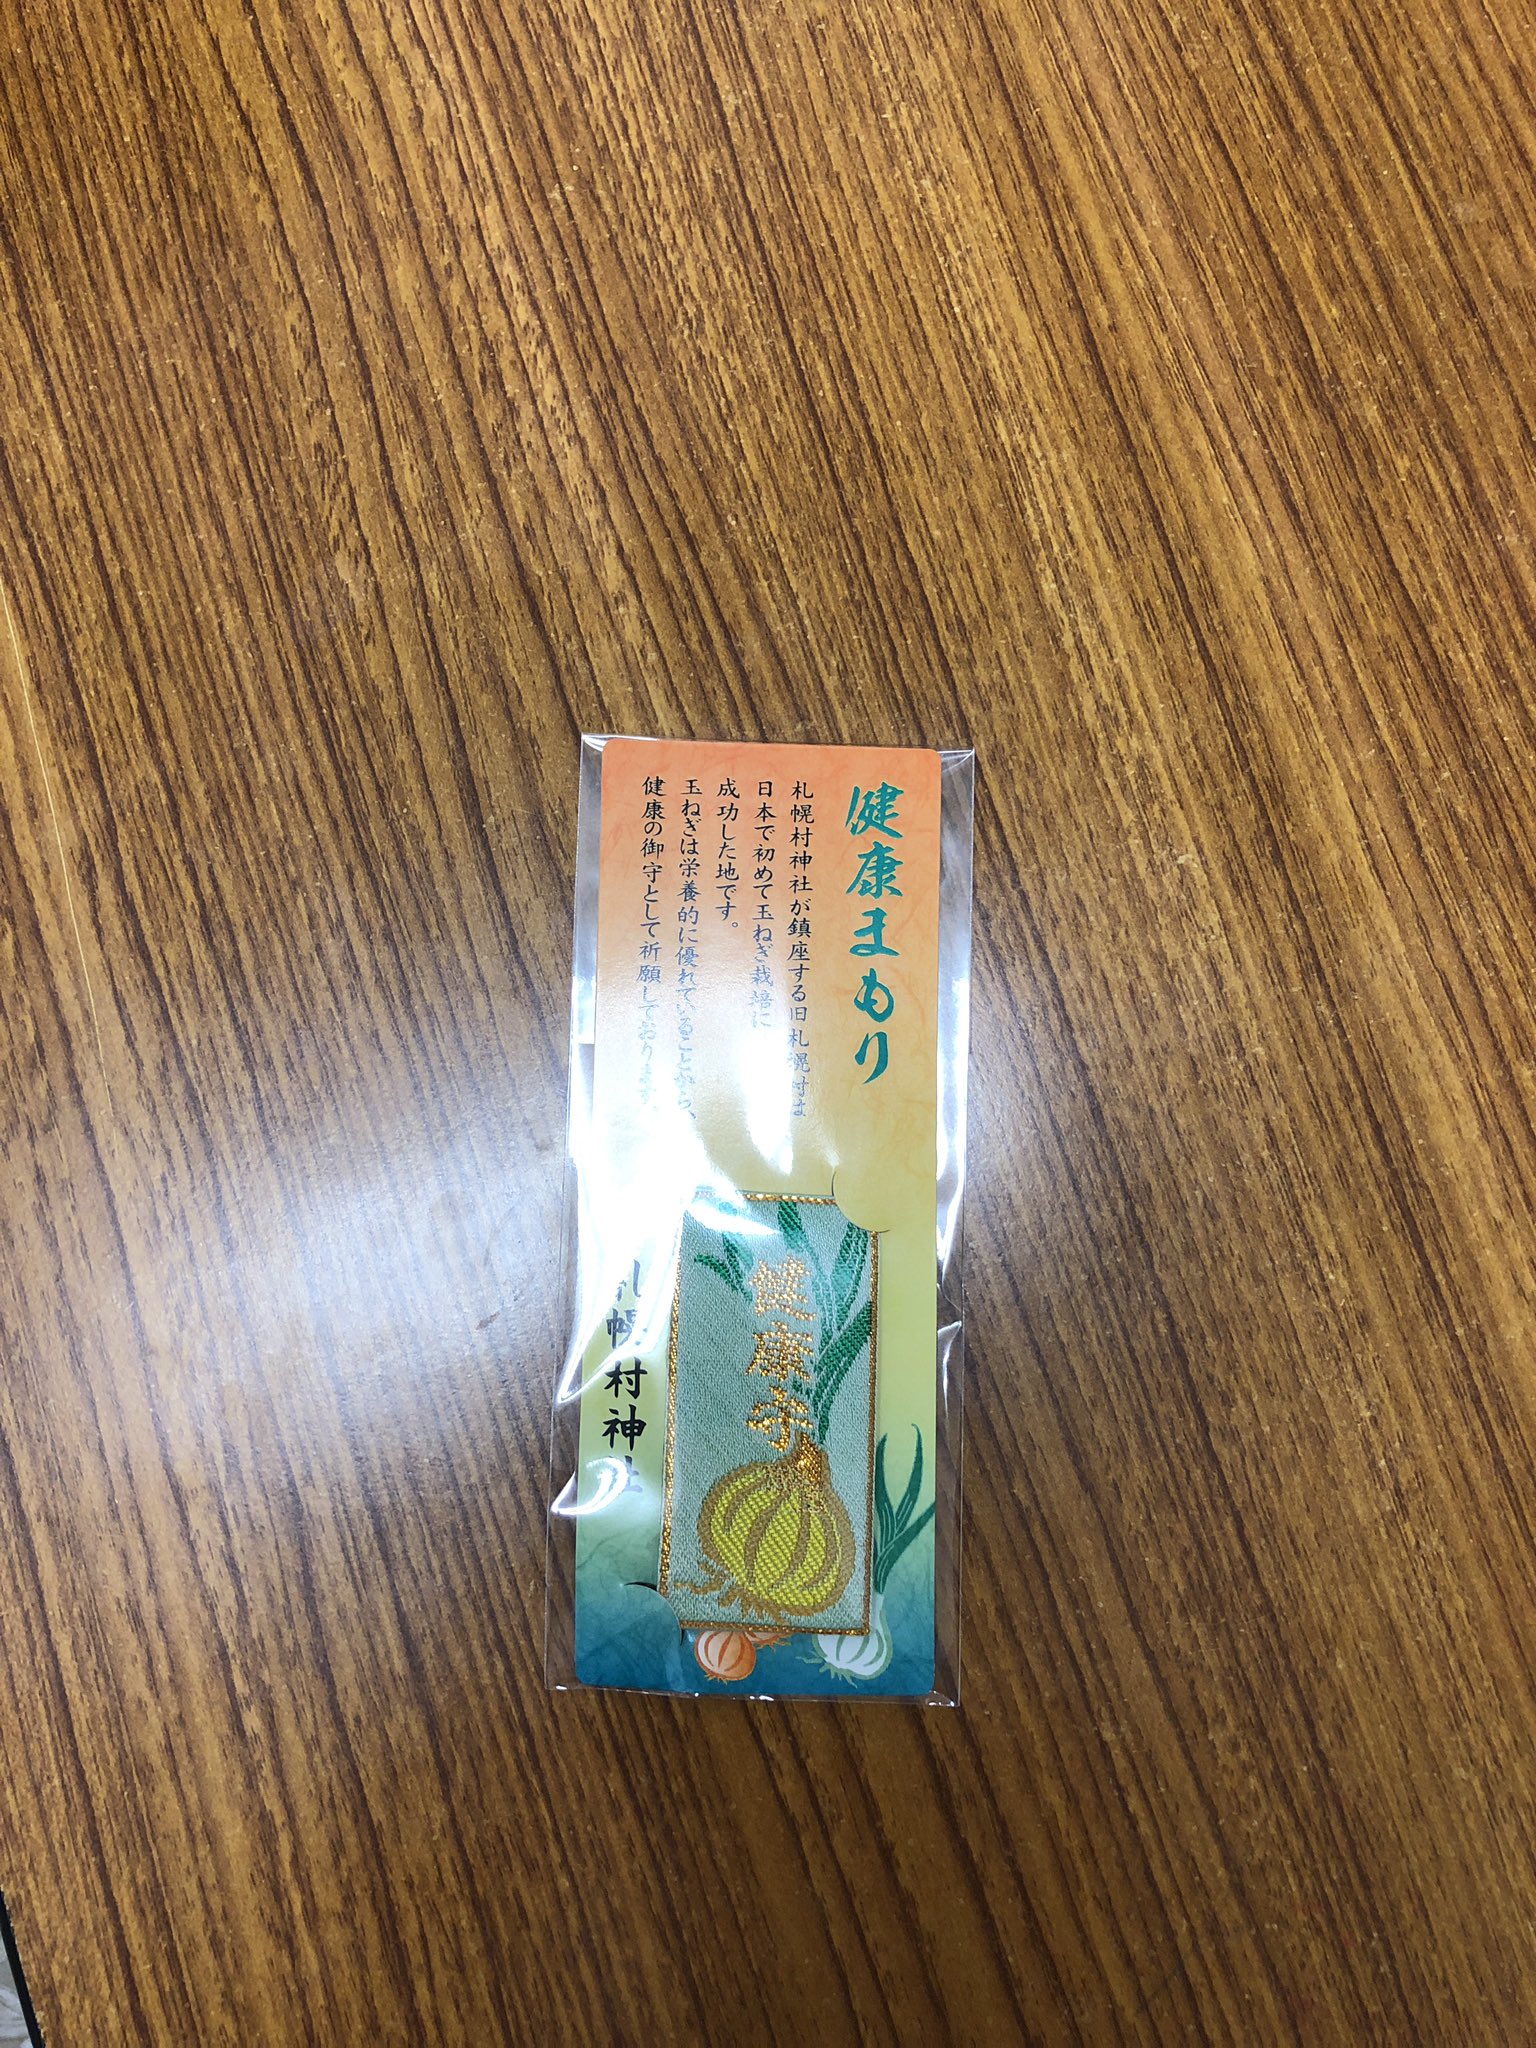 札幌村神社 先日テレビで紹介された玉ねぎのお守りも授与しております ぜひお買い求めください